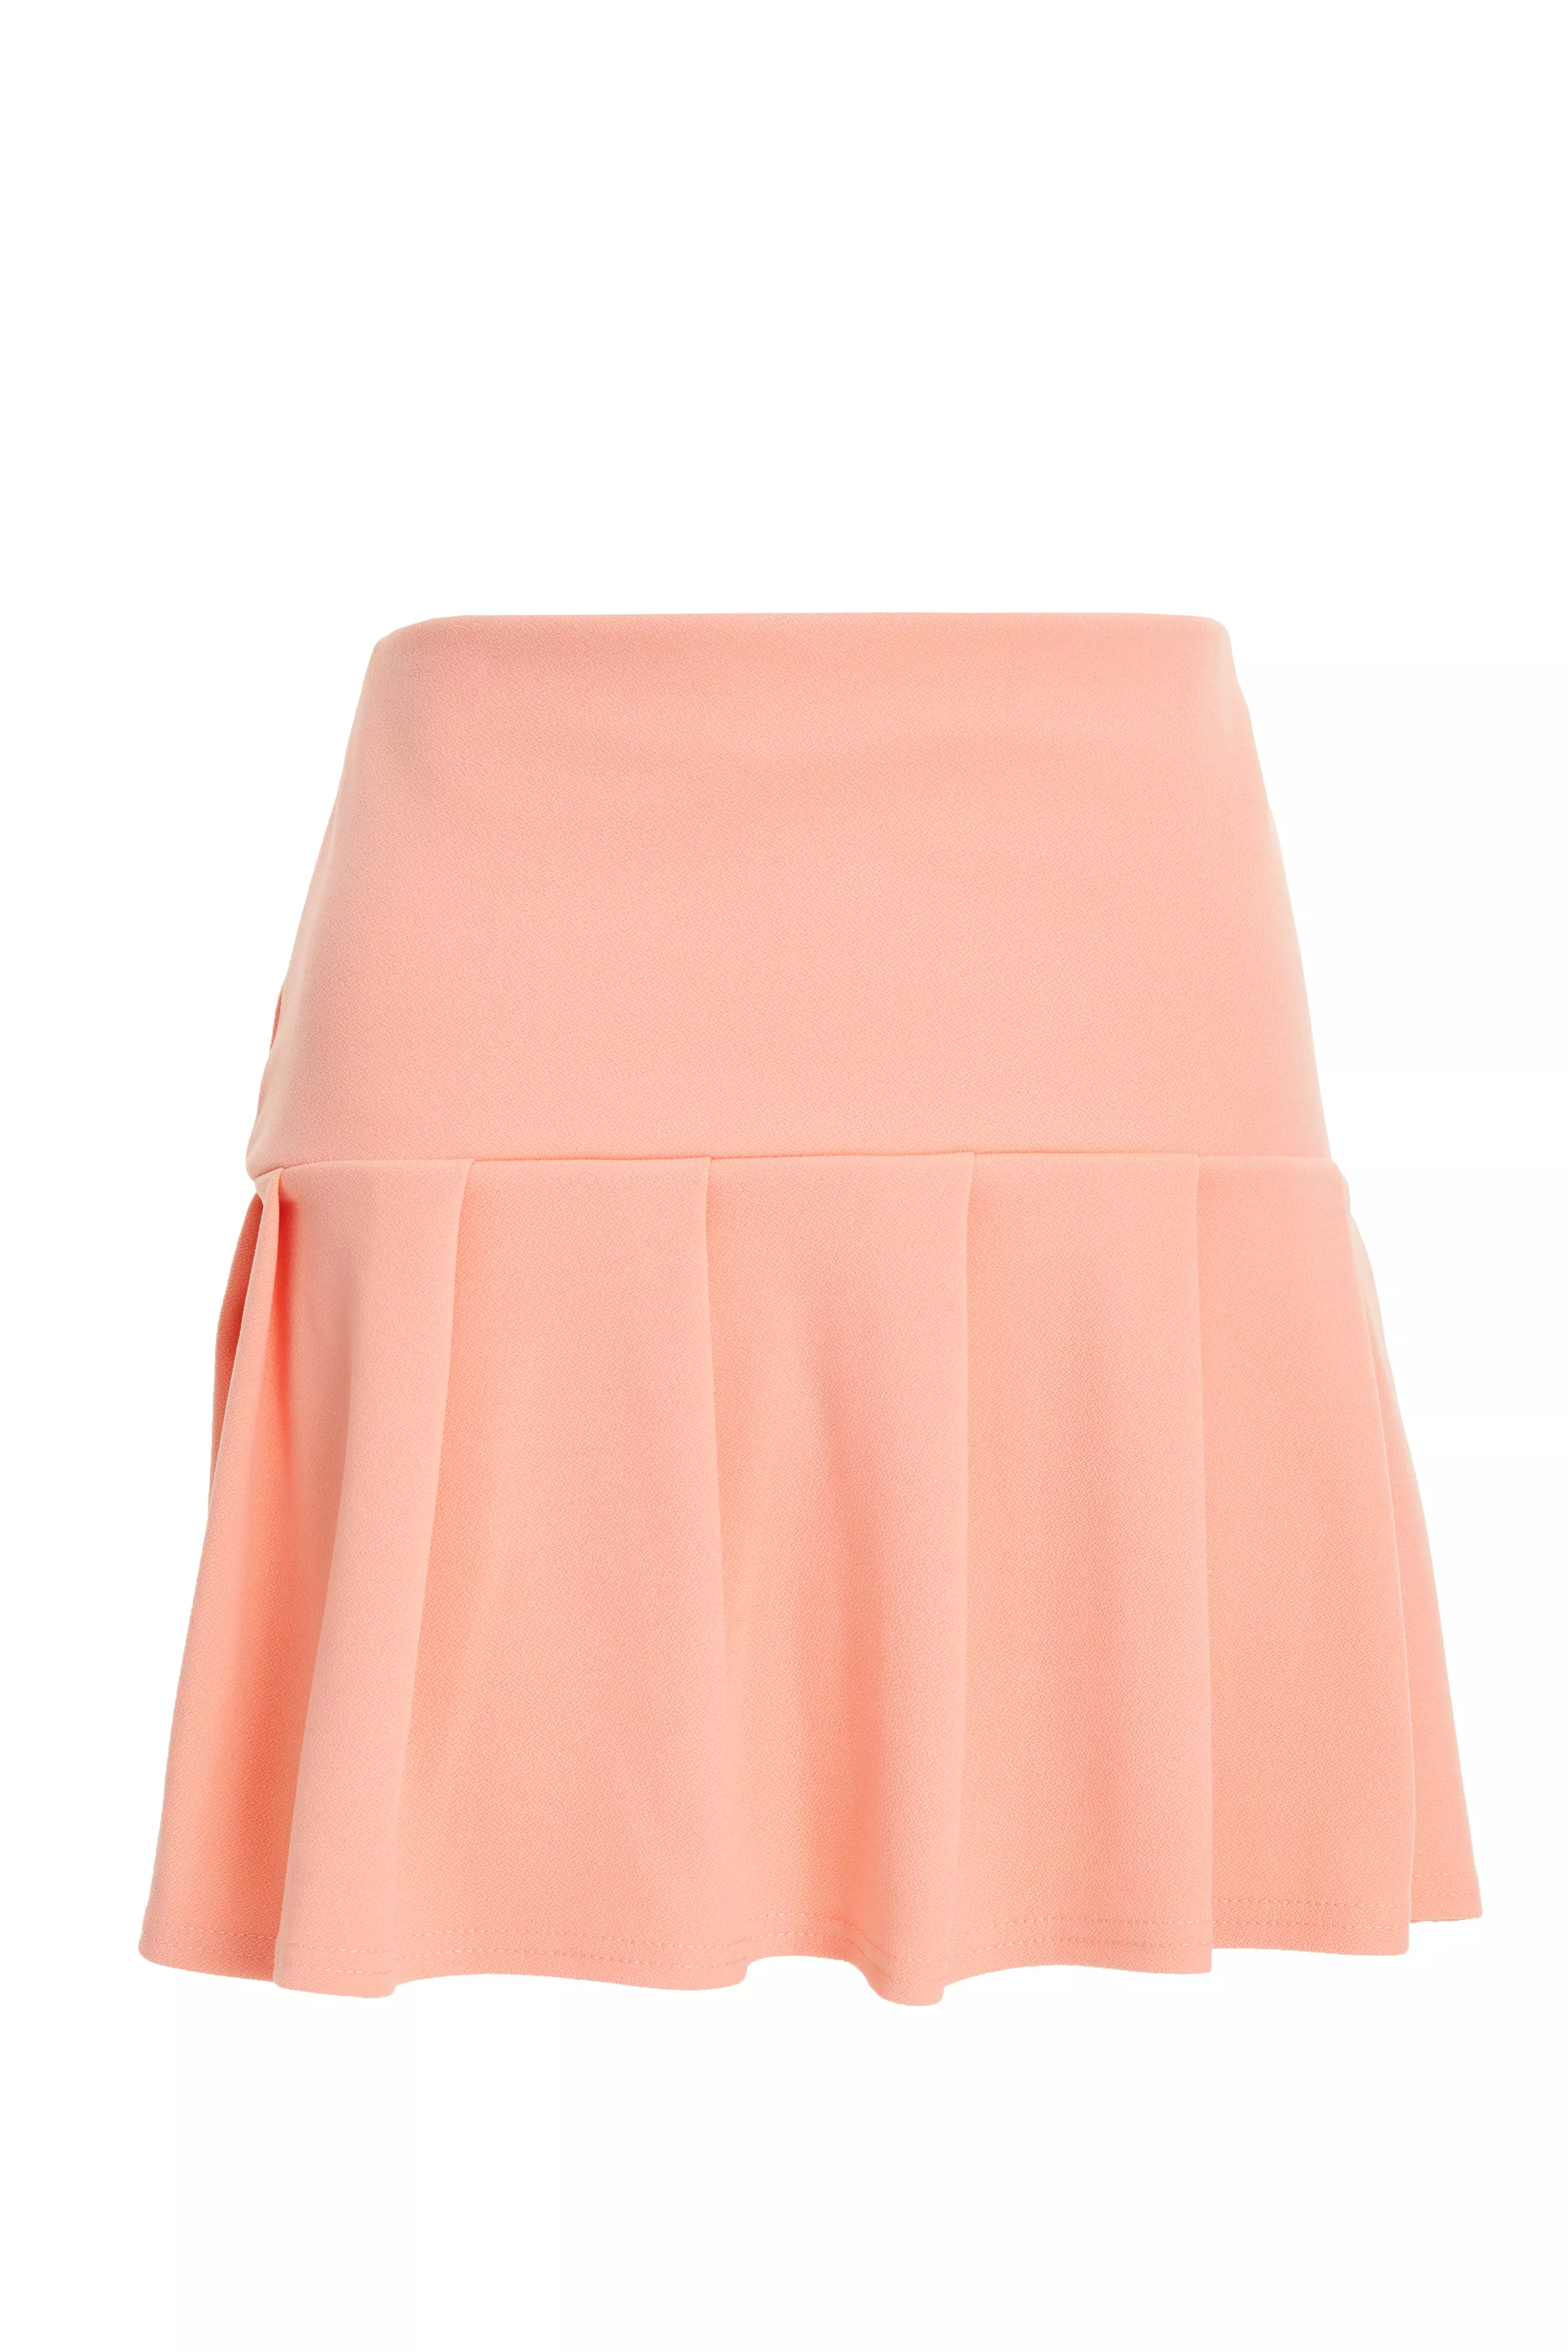 Coral Pleated Mini Skirt